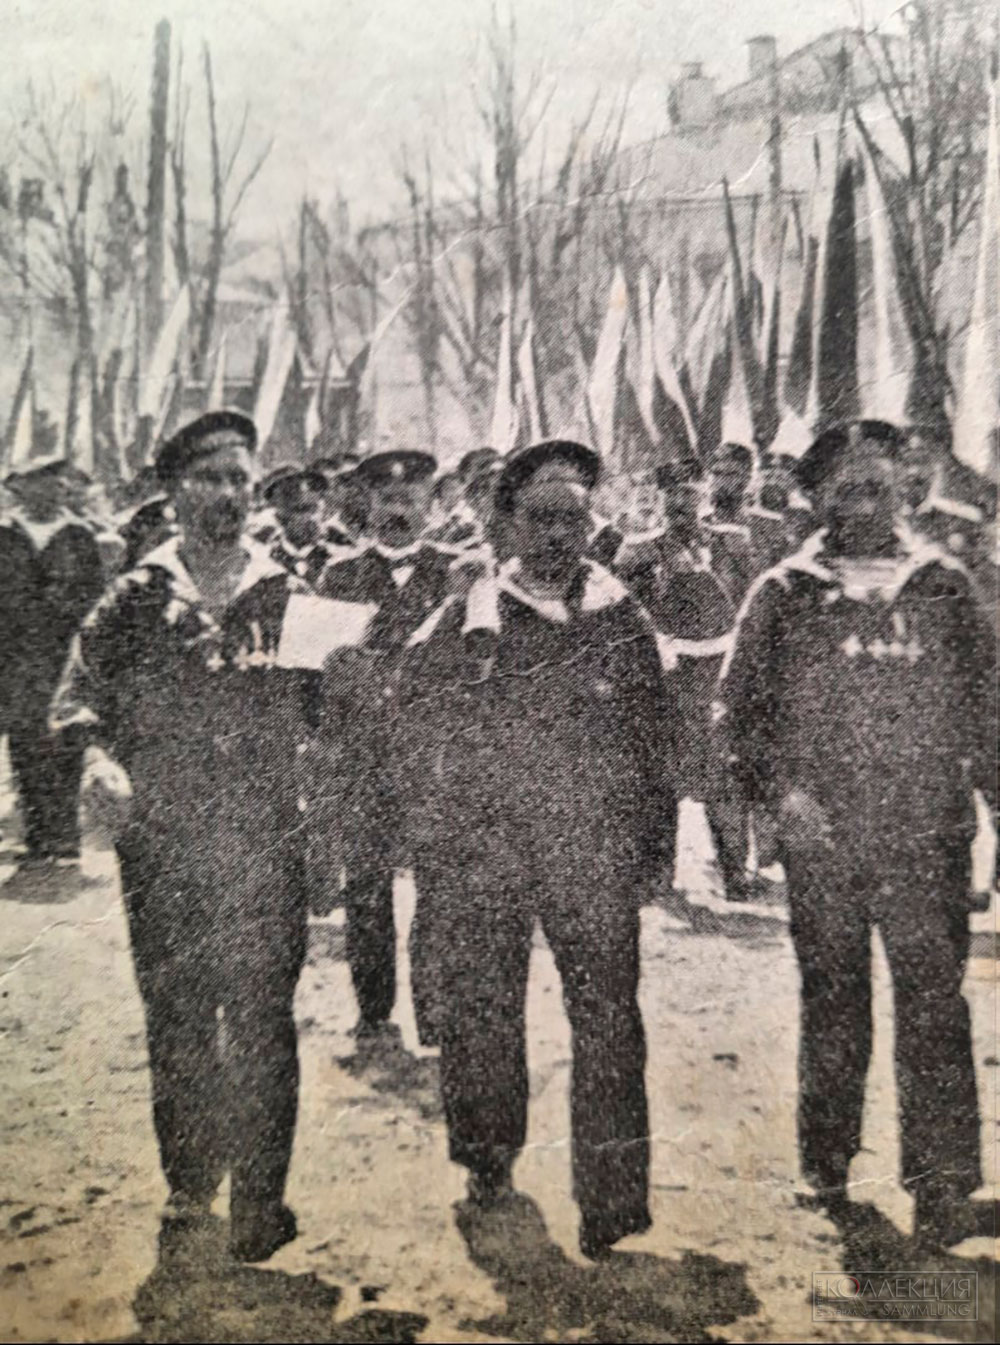 Увеличенный фрагмент фотографии прибытие героев Чемульпо в Спасские казармы. Хорошо видно наличие нескольких крестов у двух моряков